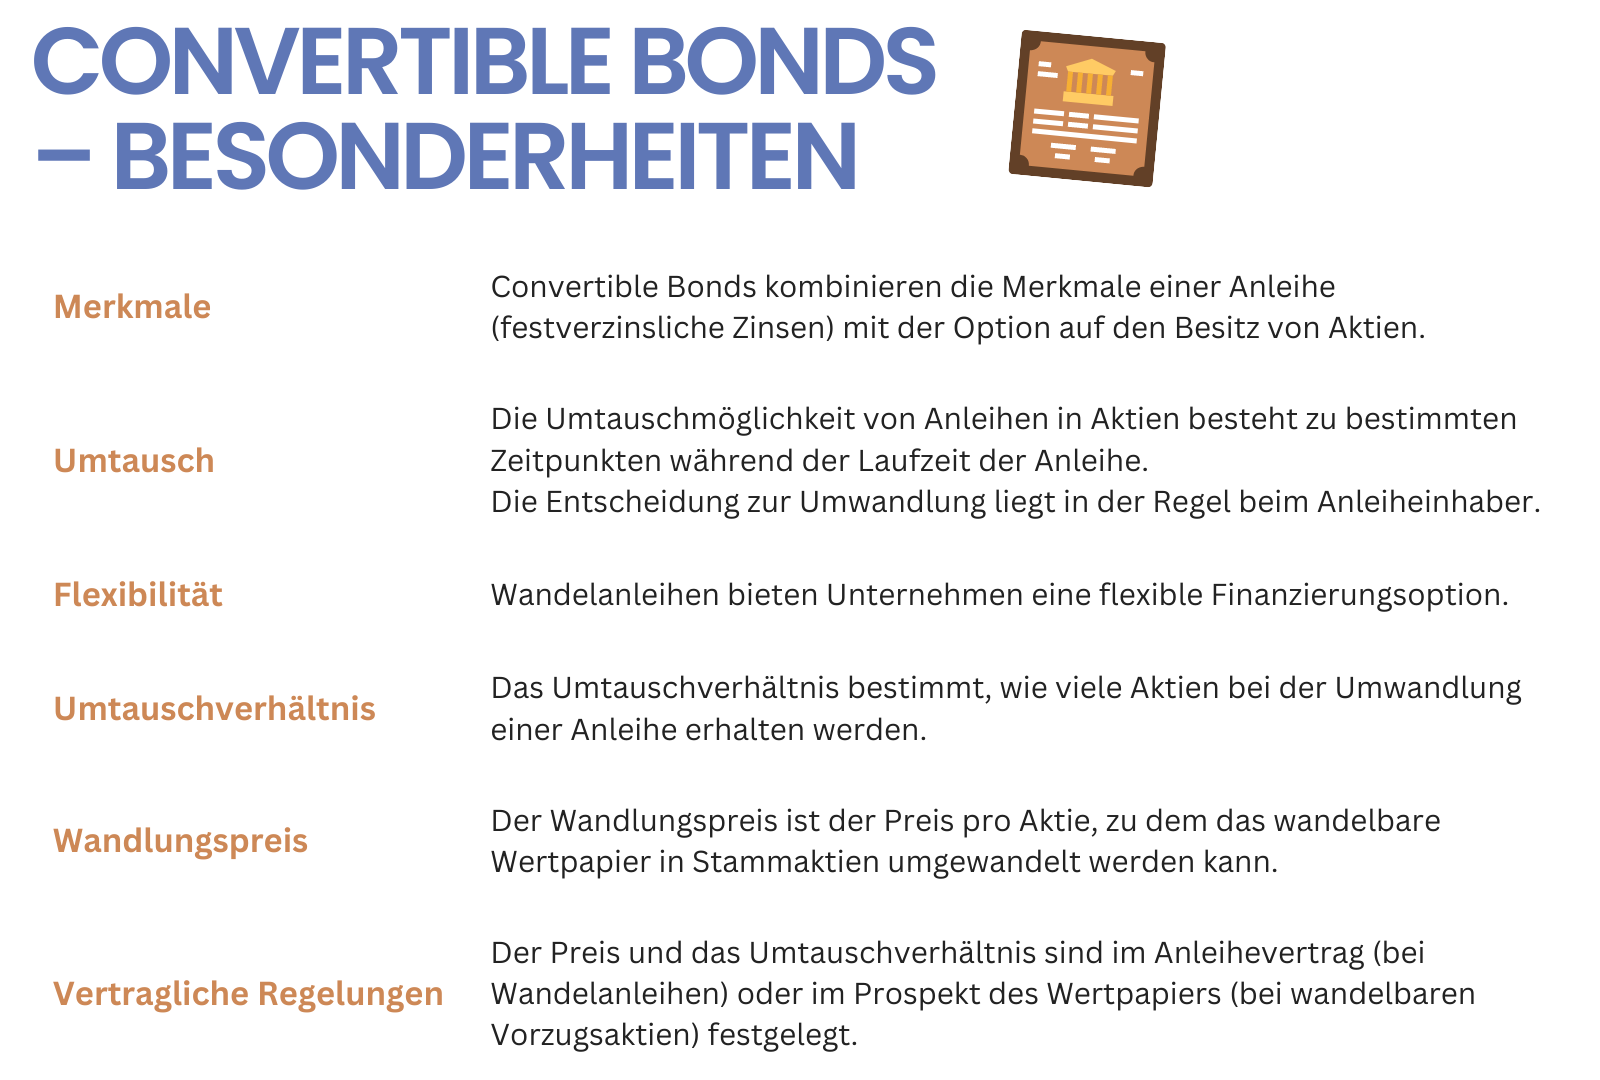 Convertible Bonds – Besonderheiten